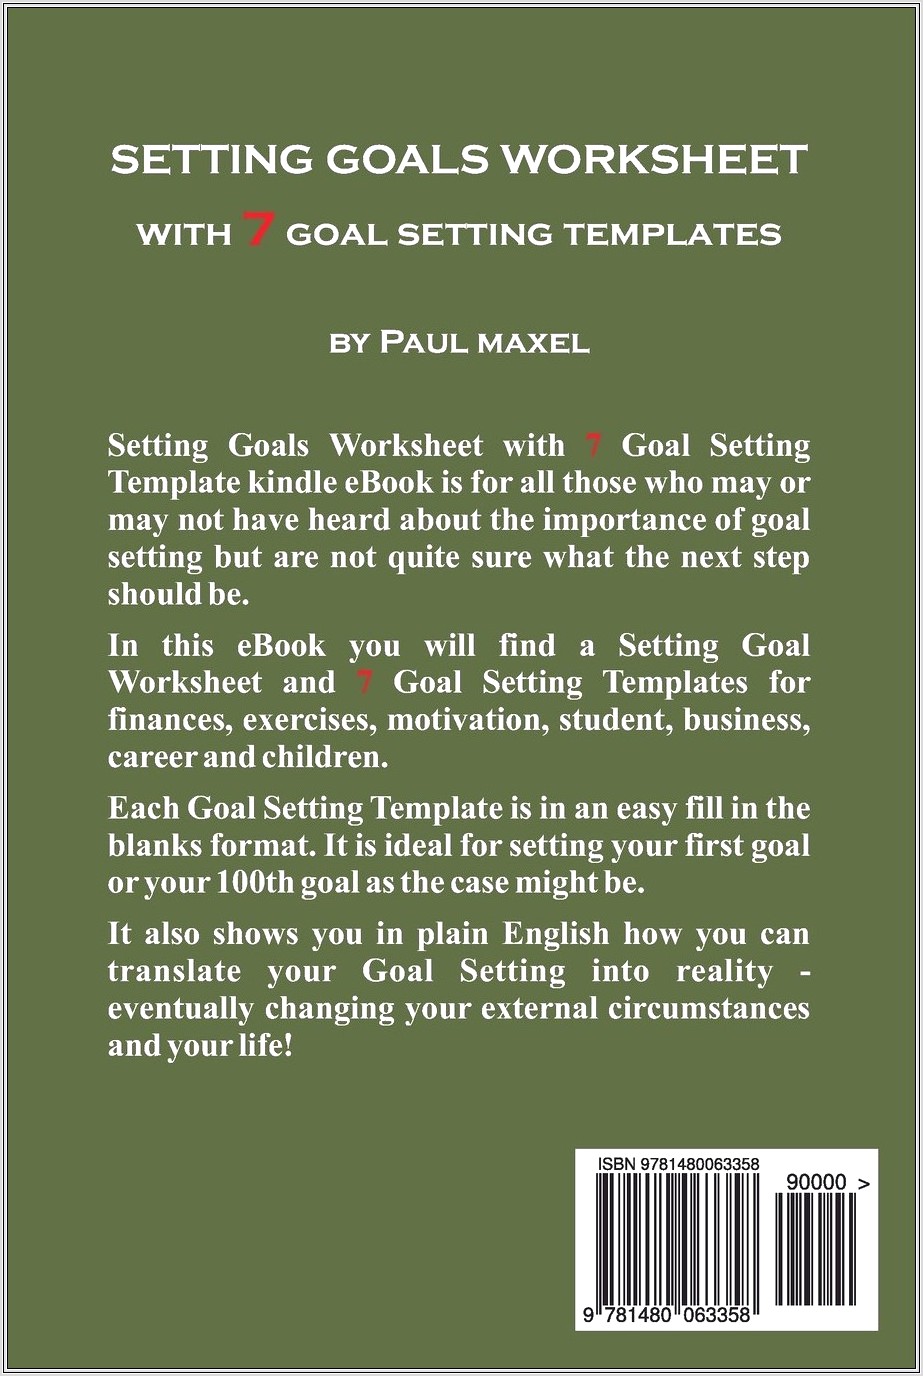 Goal Setting Worksheet Online